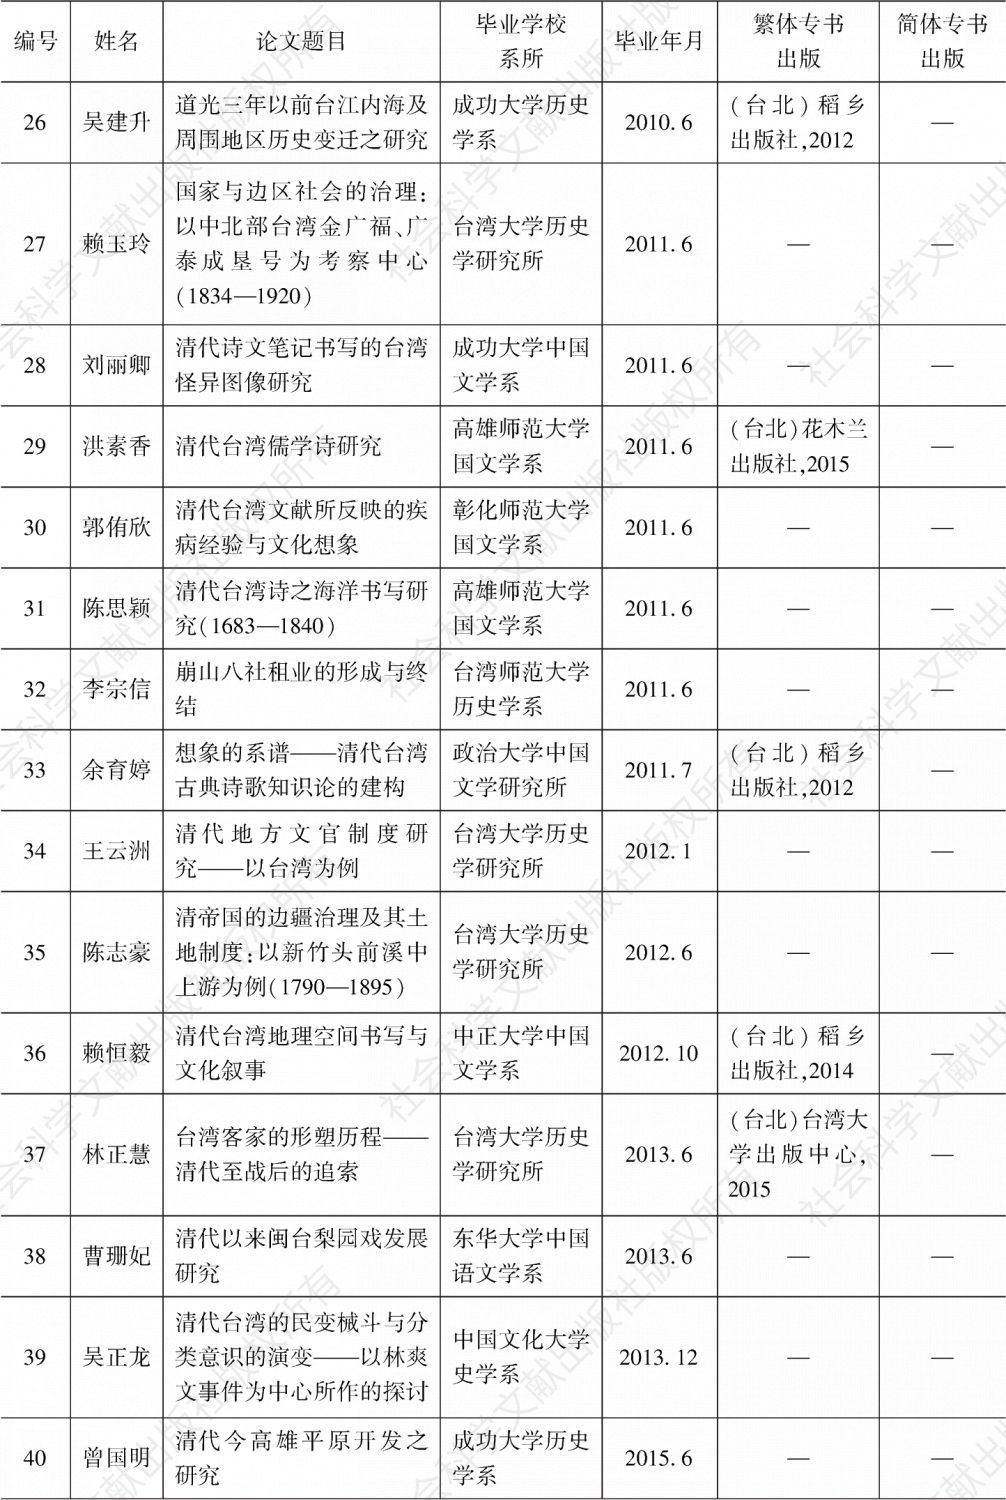 附表 2000—2017年台湾各公私立大学对于清代台湾历史、文学与文化研究博士学位论文一览-续表2